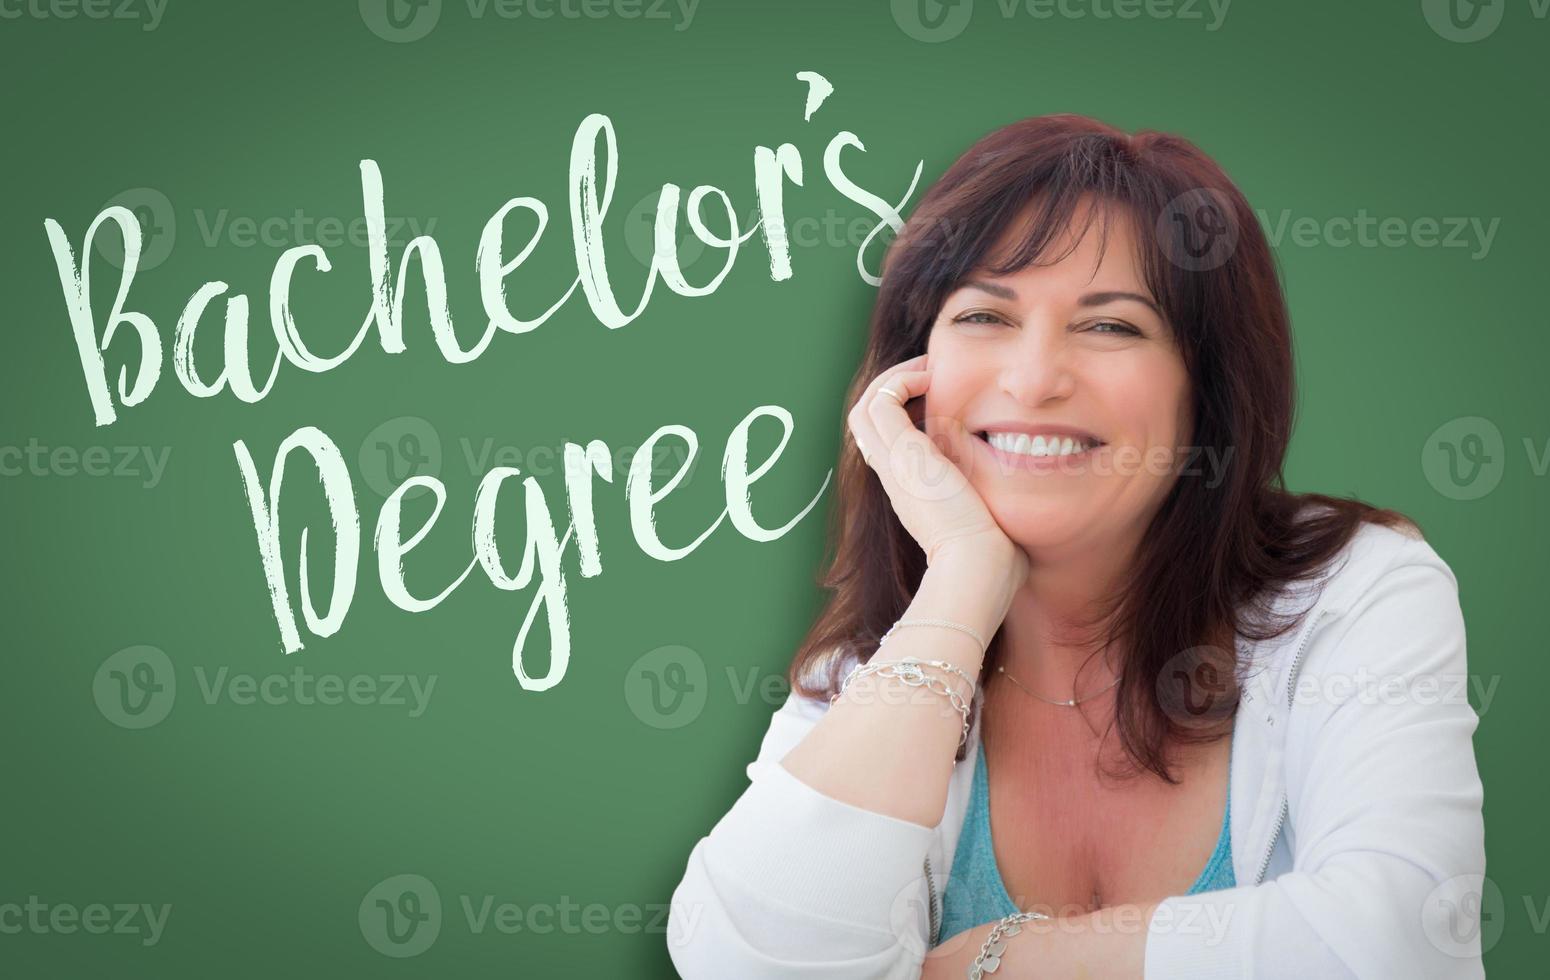 diploma de bacharel escrito na lousa verde atrás de uma mulher sorridente de meia idade foto